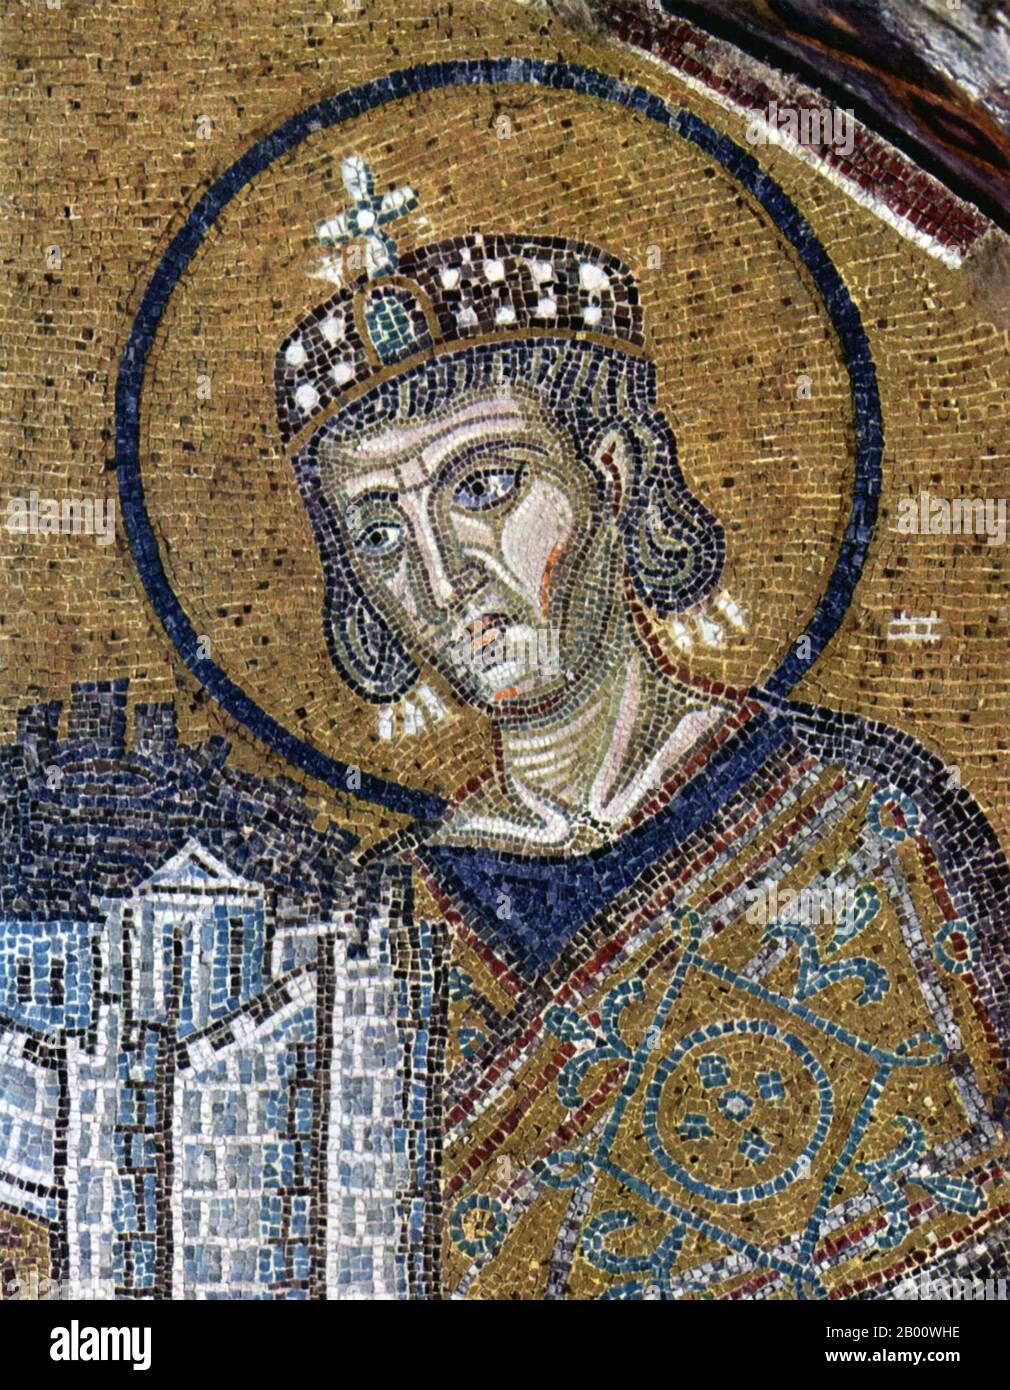 Turquía: Emperador Constantino I con un modelo de la ciudad de Bizancio. Detalle de un mosaico en la Santa Sofía, c. 1000 CE. Foto de stock